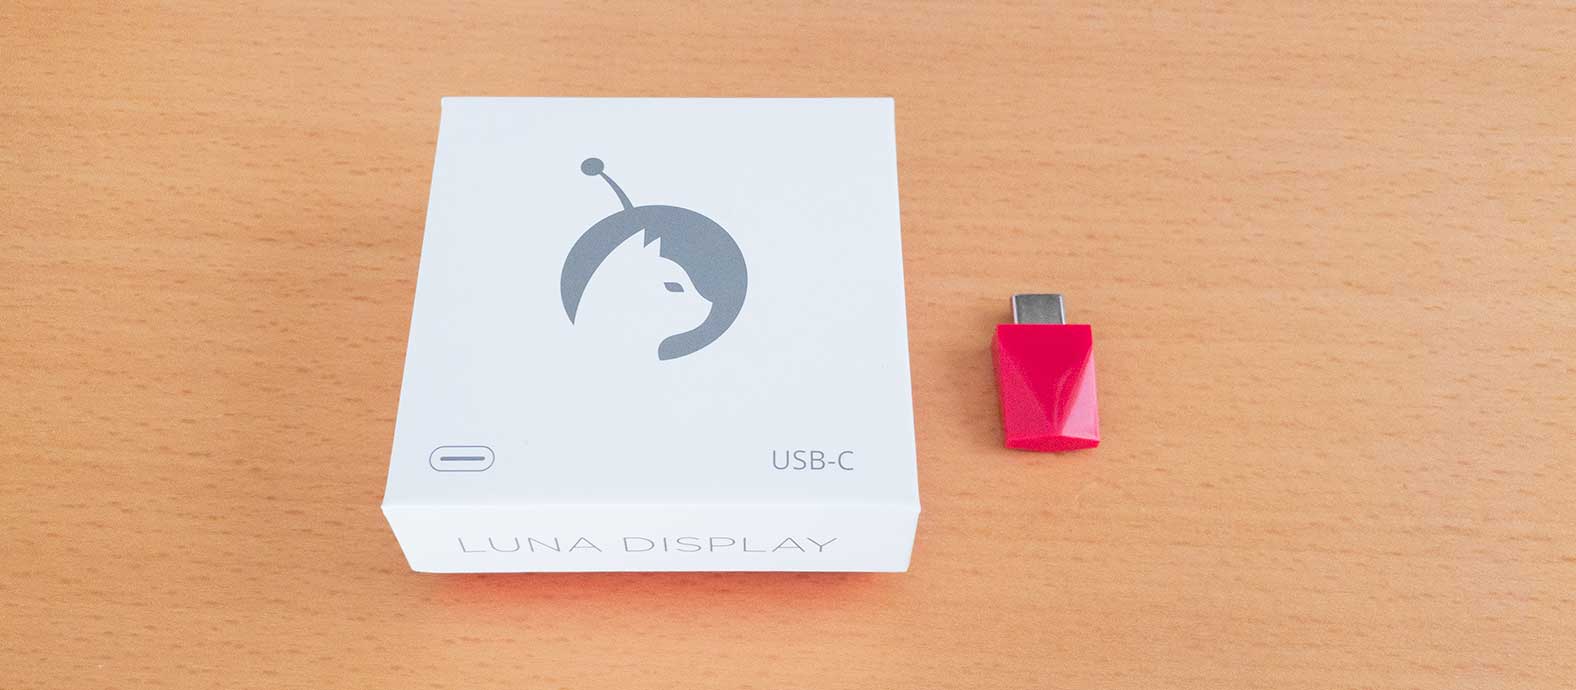 Luna DisplayのパッケージとUSB Type-Cのデバイス